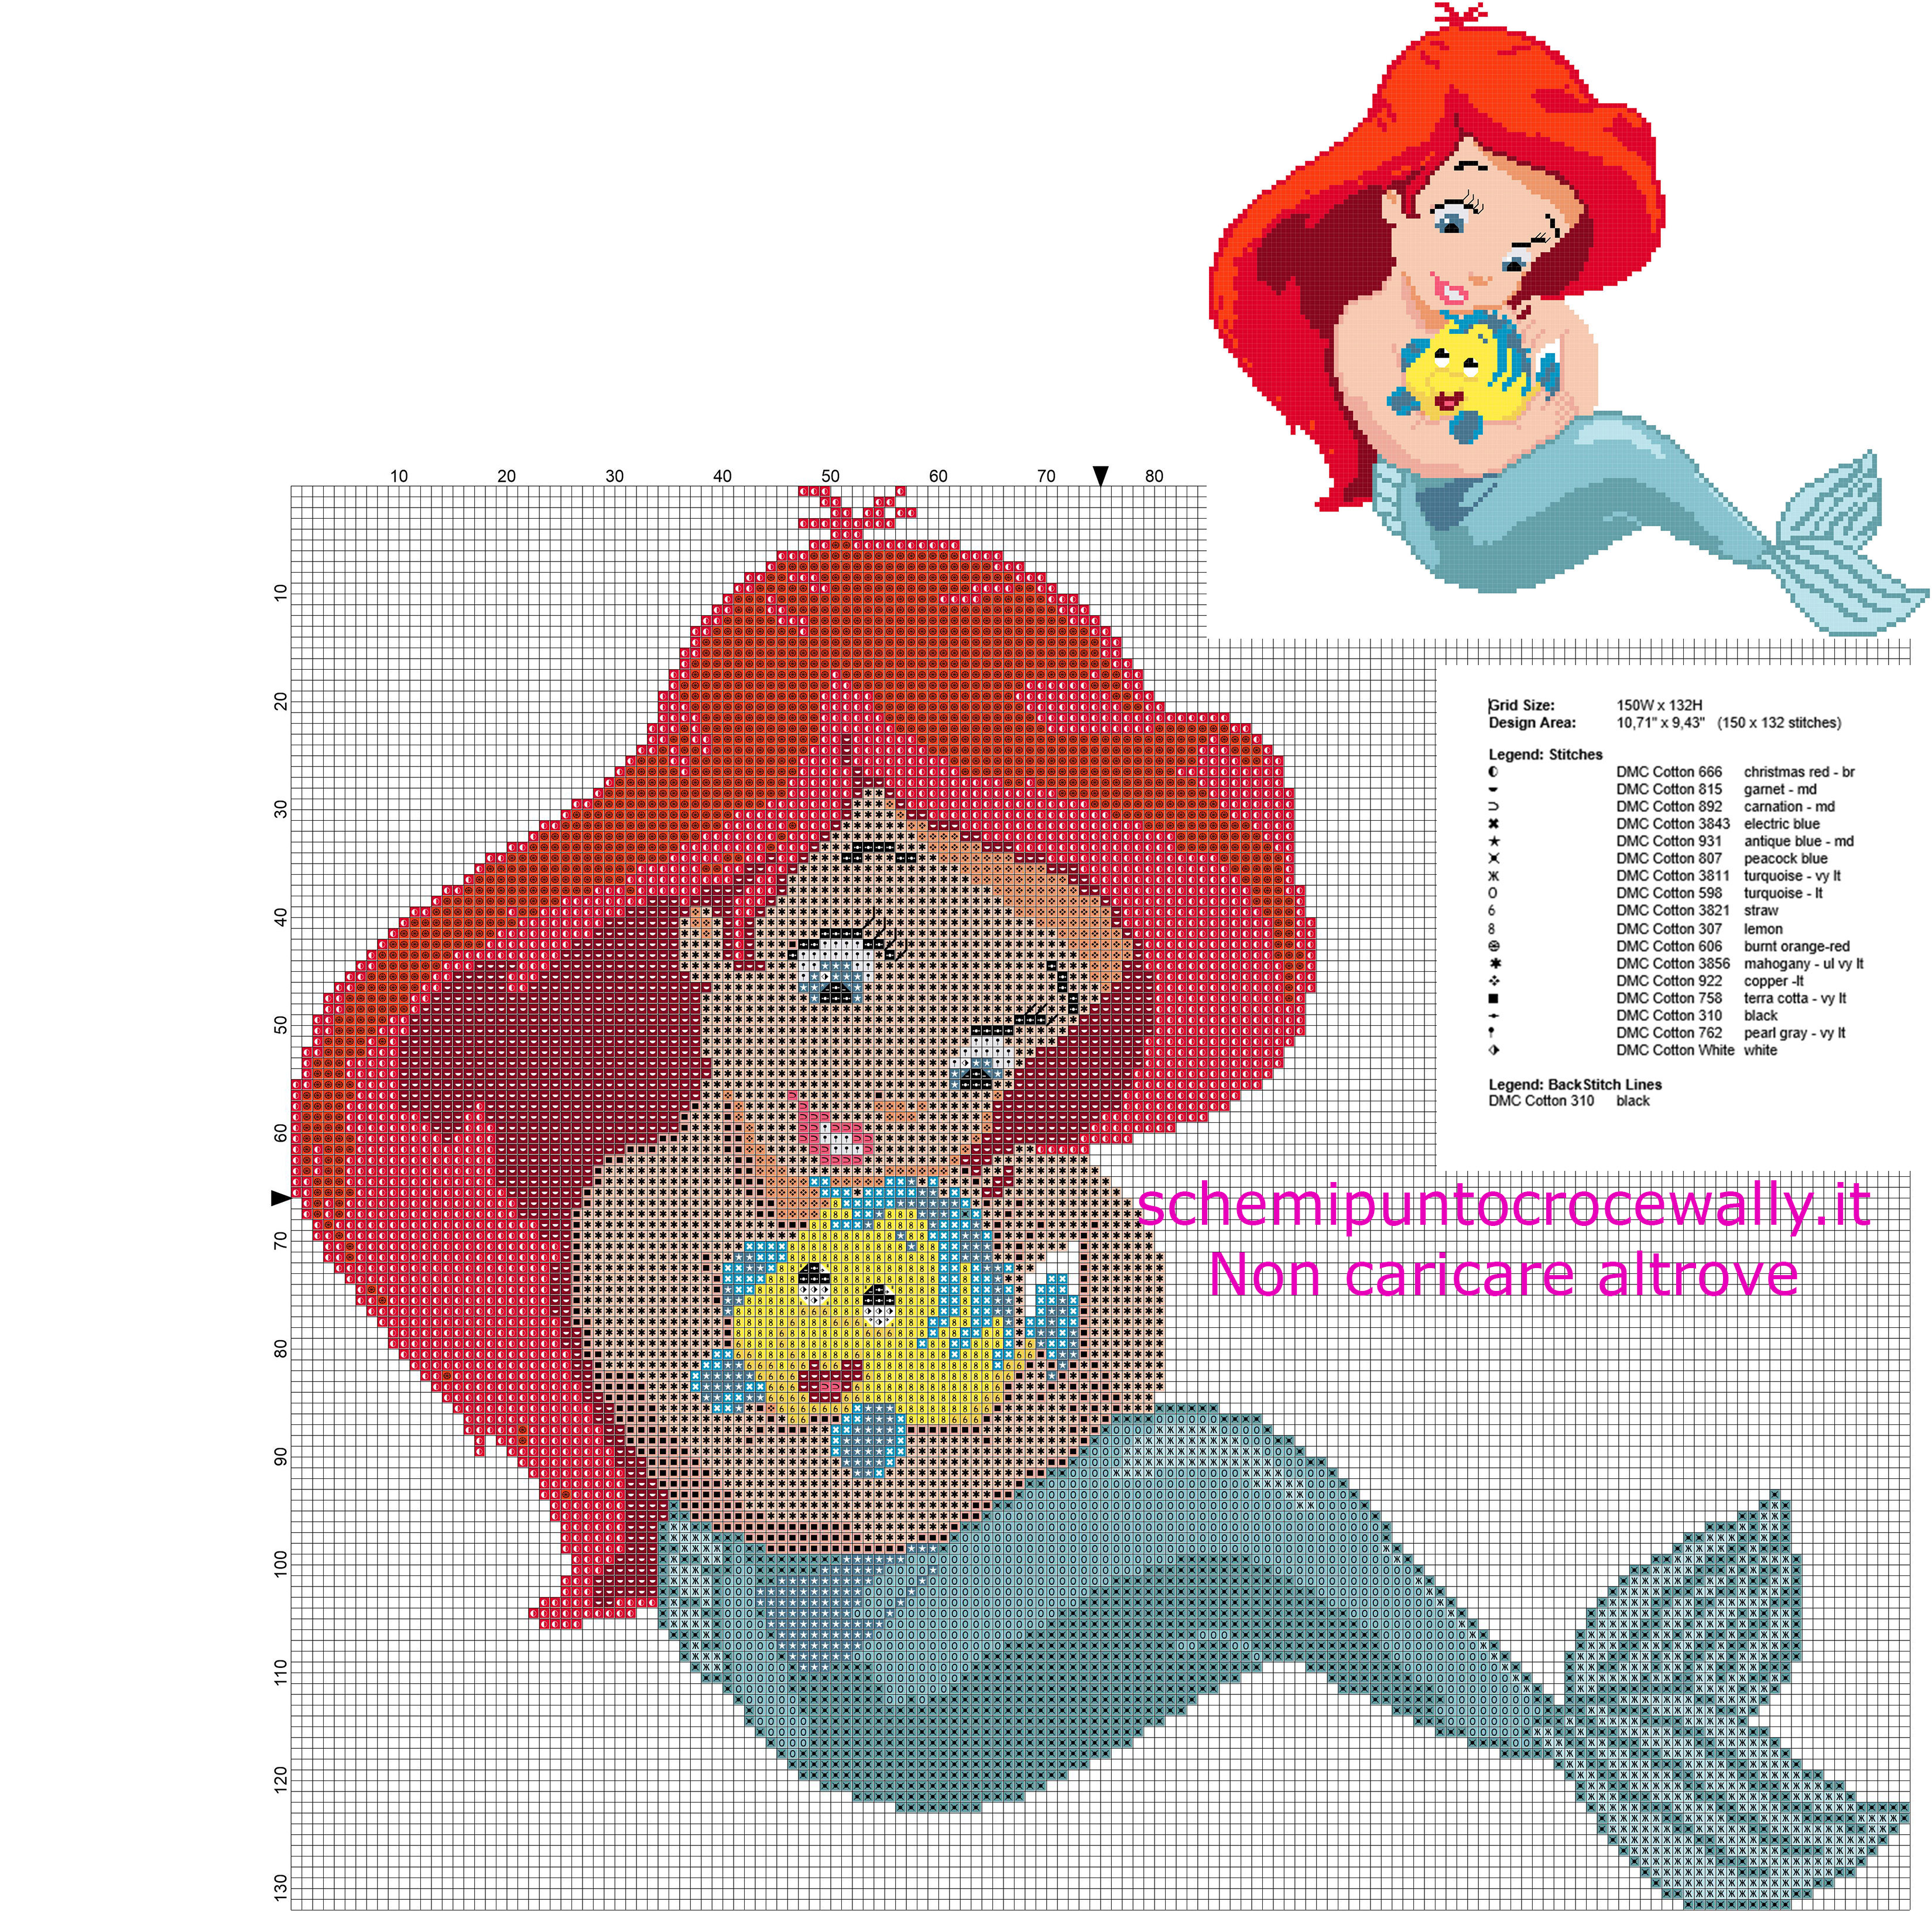 La baby Principessa Ariel La Sirenetta schema punto croce gratis nella categoria Disney